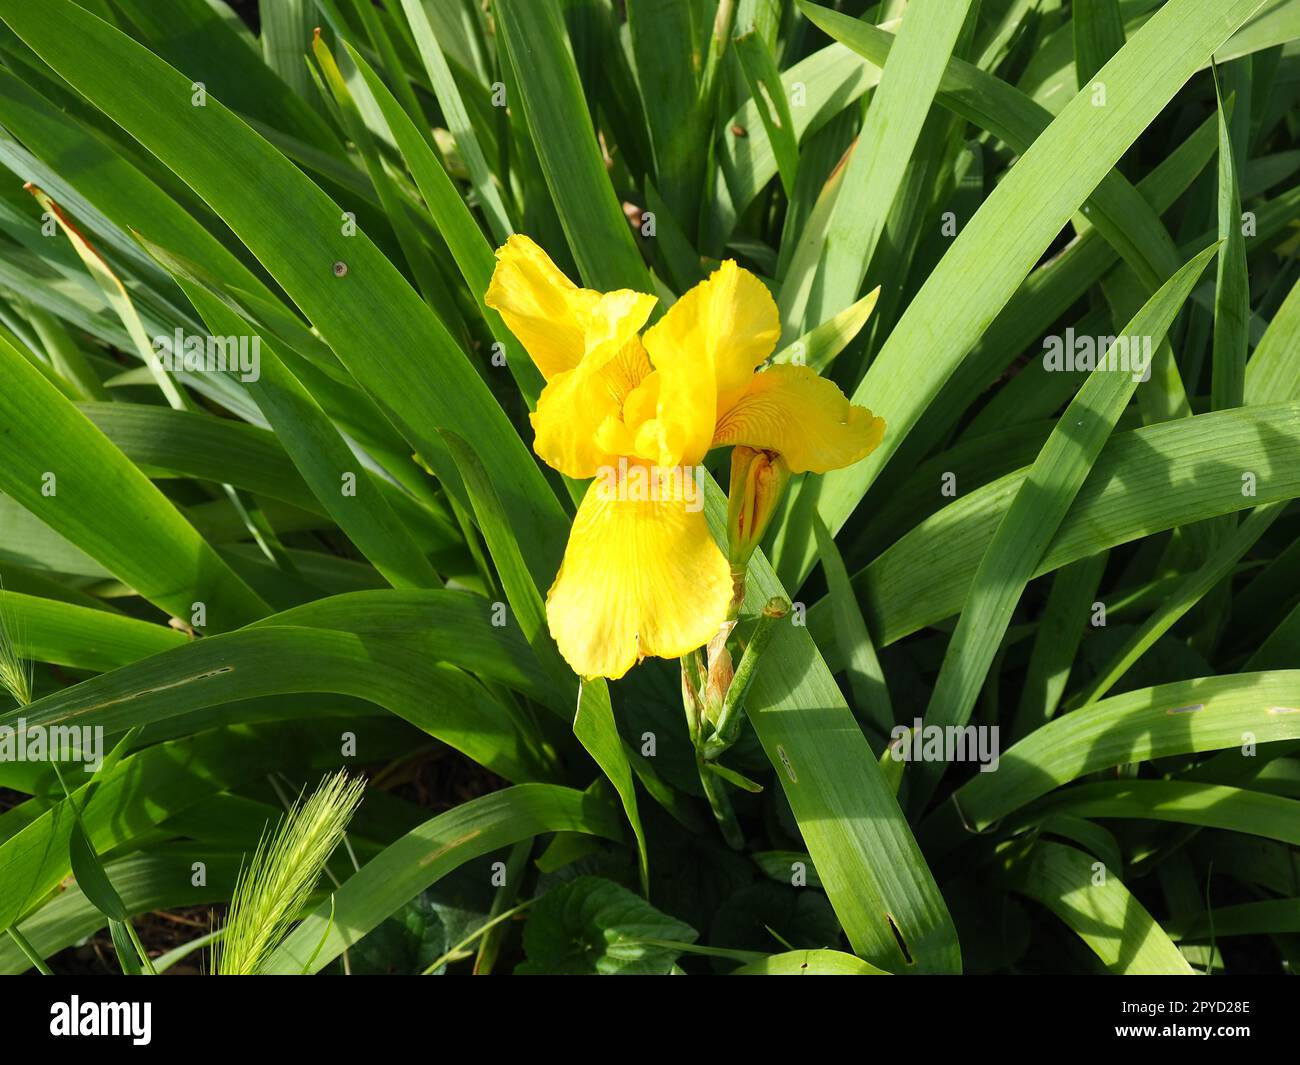 Iris, un genre de rhizomes vivaces de la famille des Iris. Une herbe ornementale avec de grandes fleurs lumineuses. Fleur délicate gracieuse de couleur jaune avec des veines oranges. Feuilles vertes en arrière-plan Banque D'Images